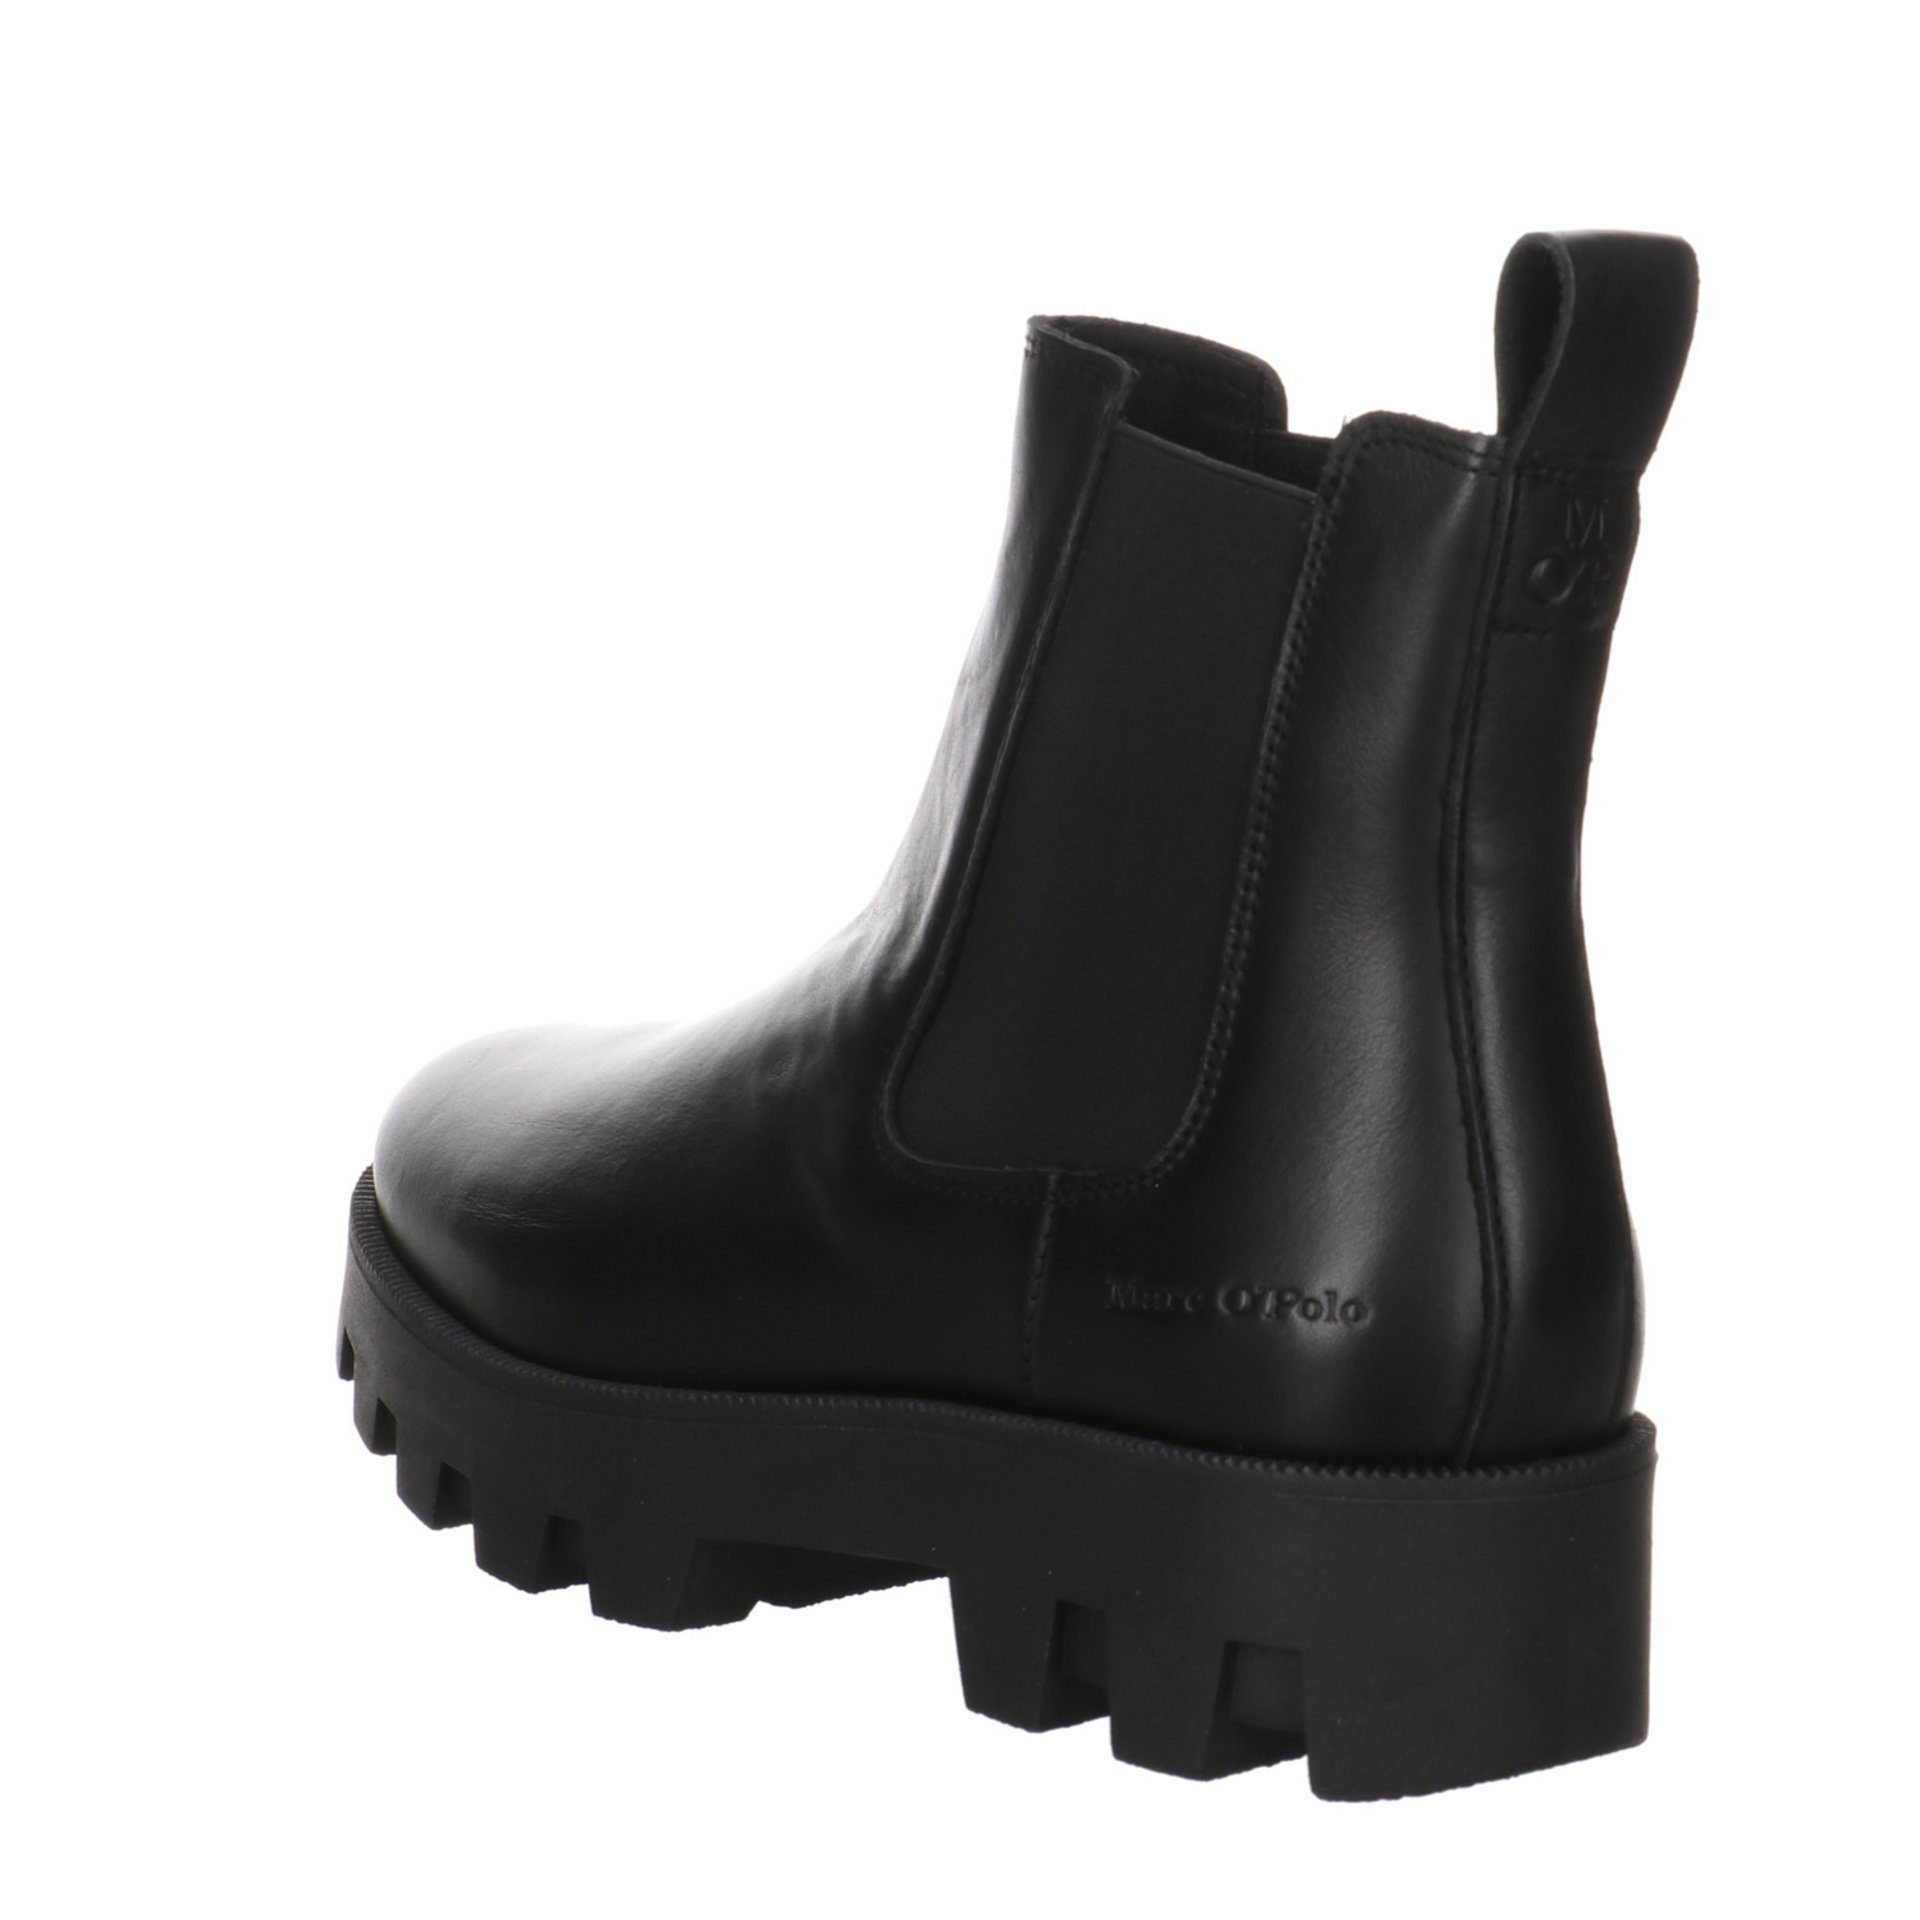 Chelsea-Boots Stiefelette Damen Stiefeletten Leder-/Textilkombination Schuhe O'Polo Marc